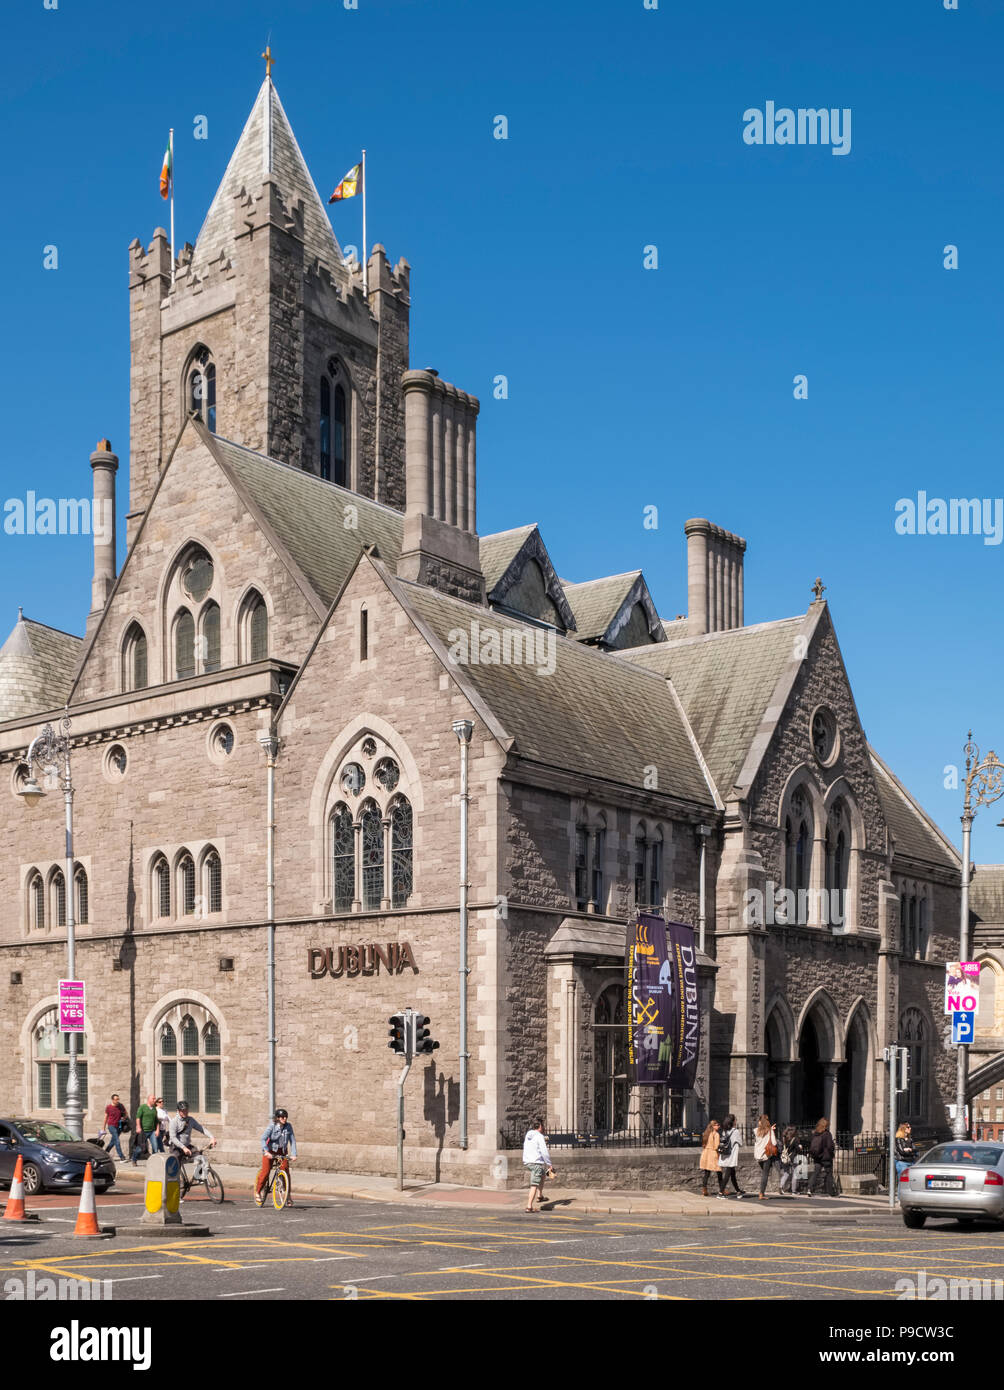 Dublinia, a living history museum de la ville médiévale de Dublin, Irlande, Europe Banque D'Images